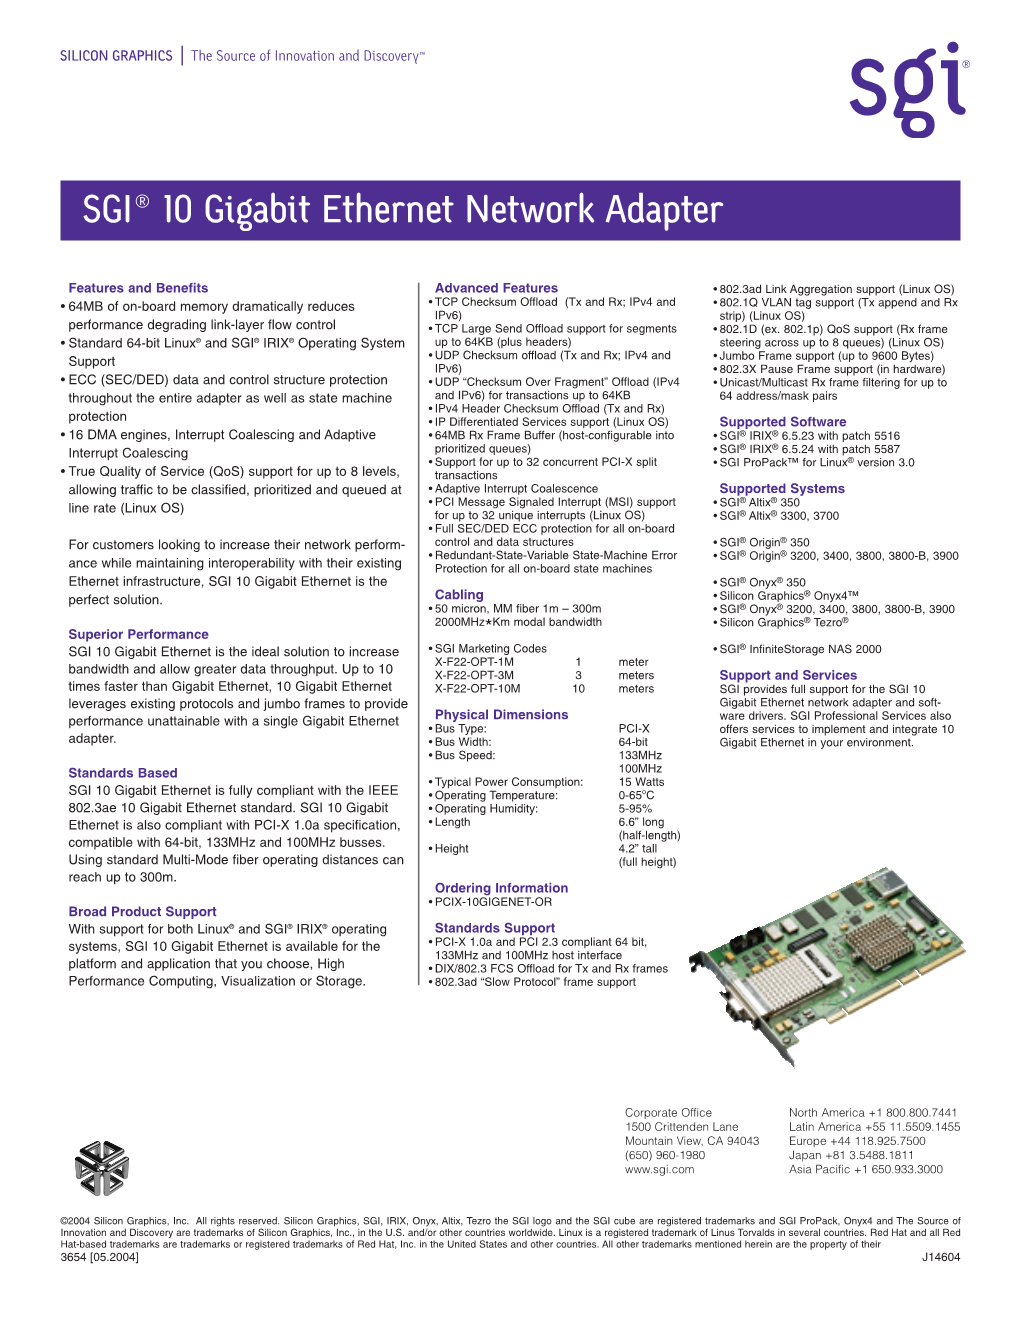 SGI 10 Gigabit Ethernet Network Adapter